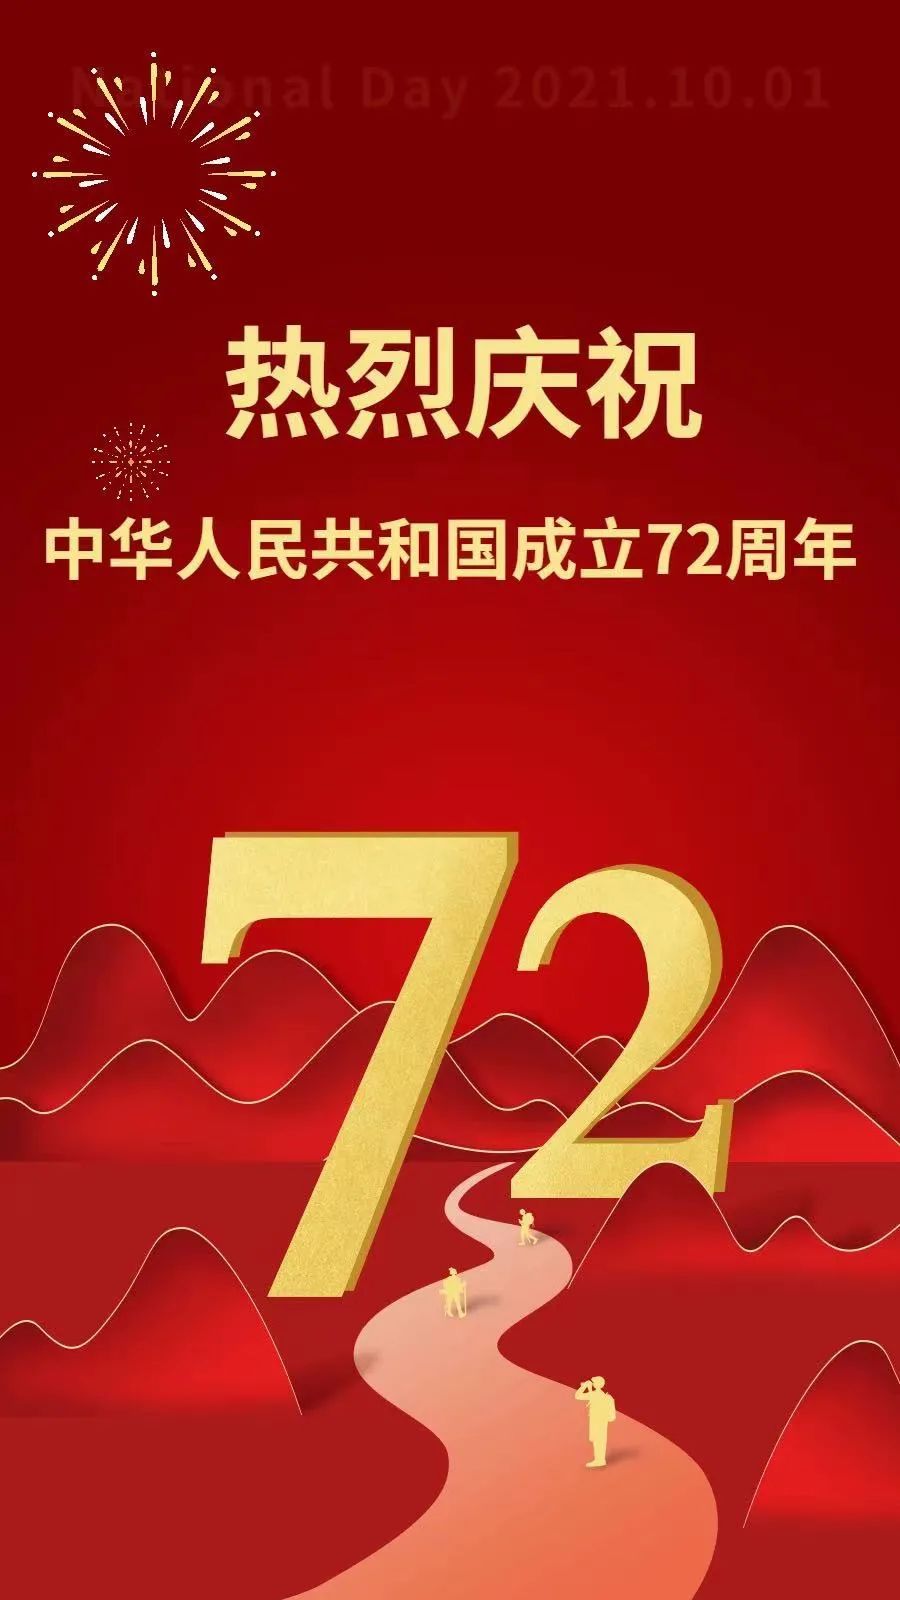 营造庆祝中华人民共和国成立72周年的浓厚氛围,展示党领导下新时代我